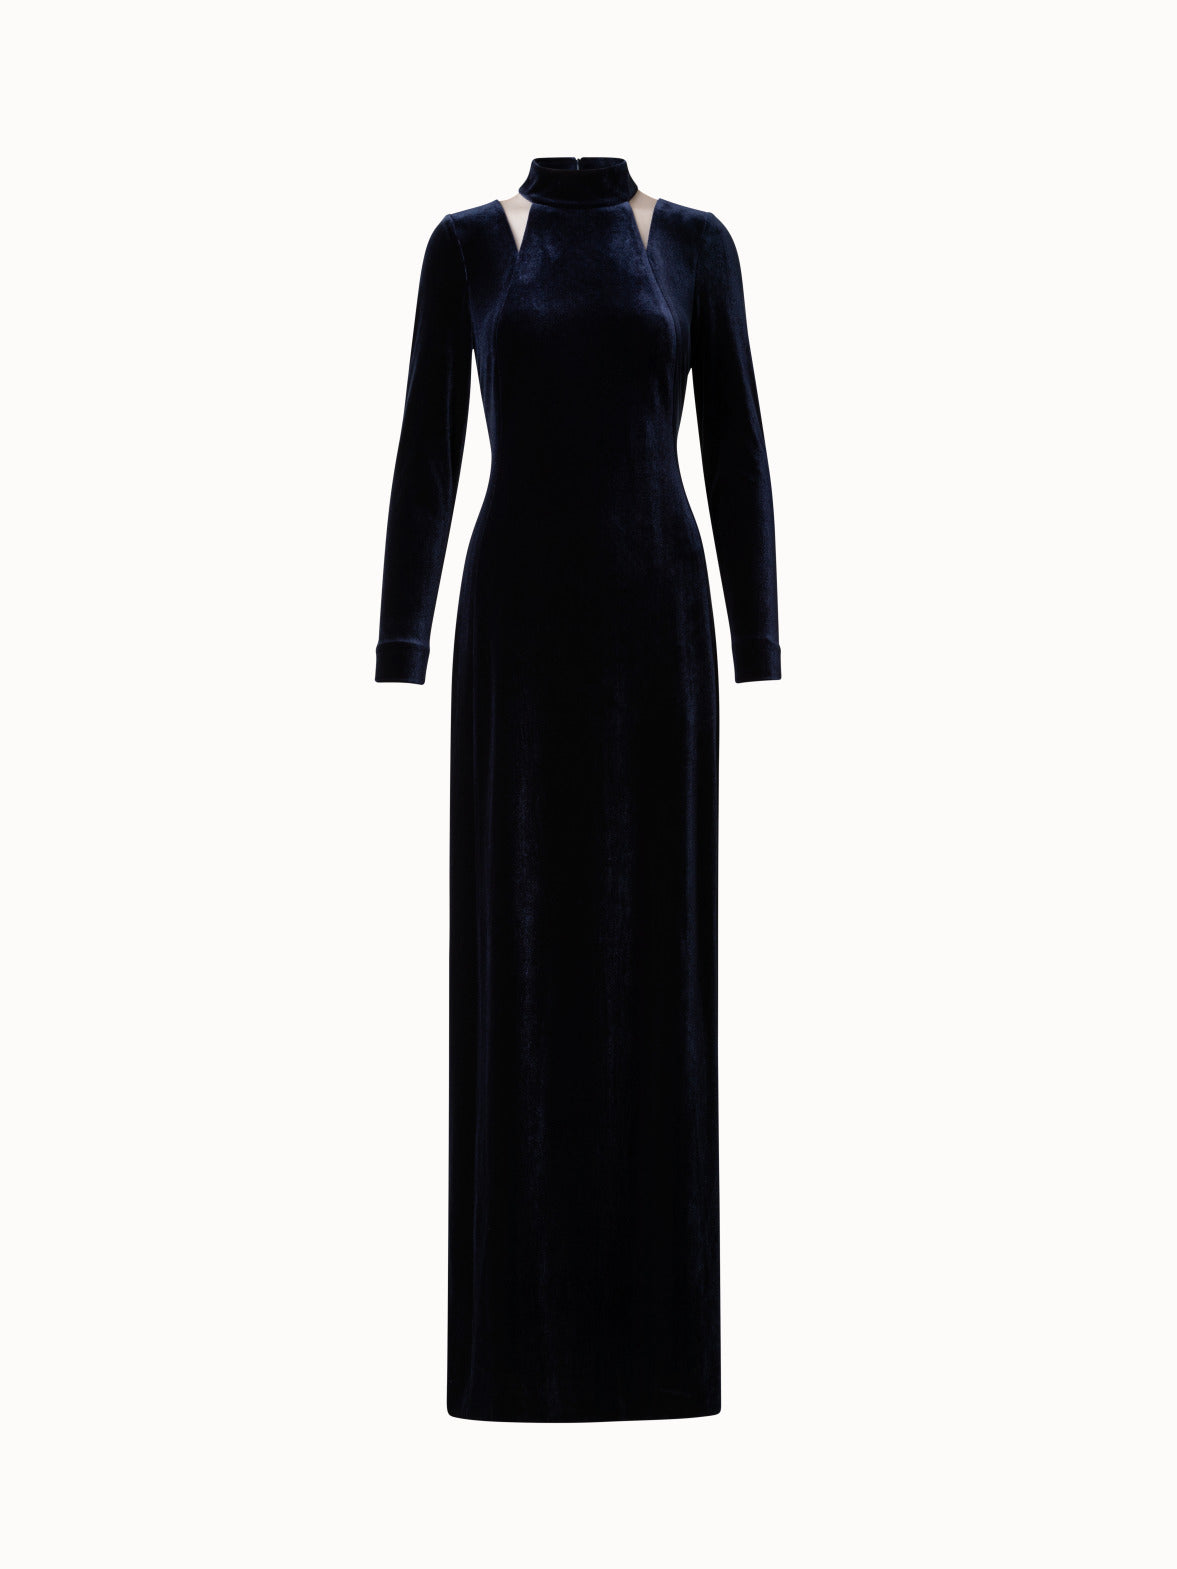 Black Velvet Dress - Trumpet Maxi Dress - Black Formal Gown - Lulus